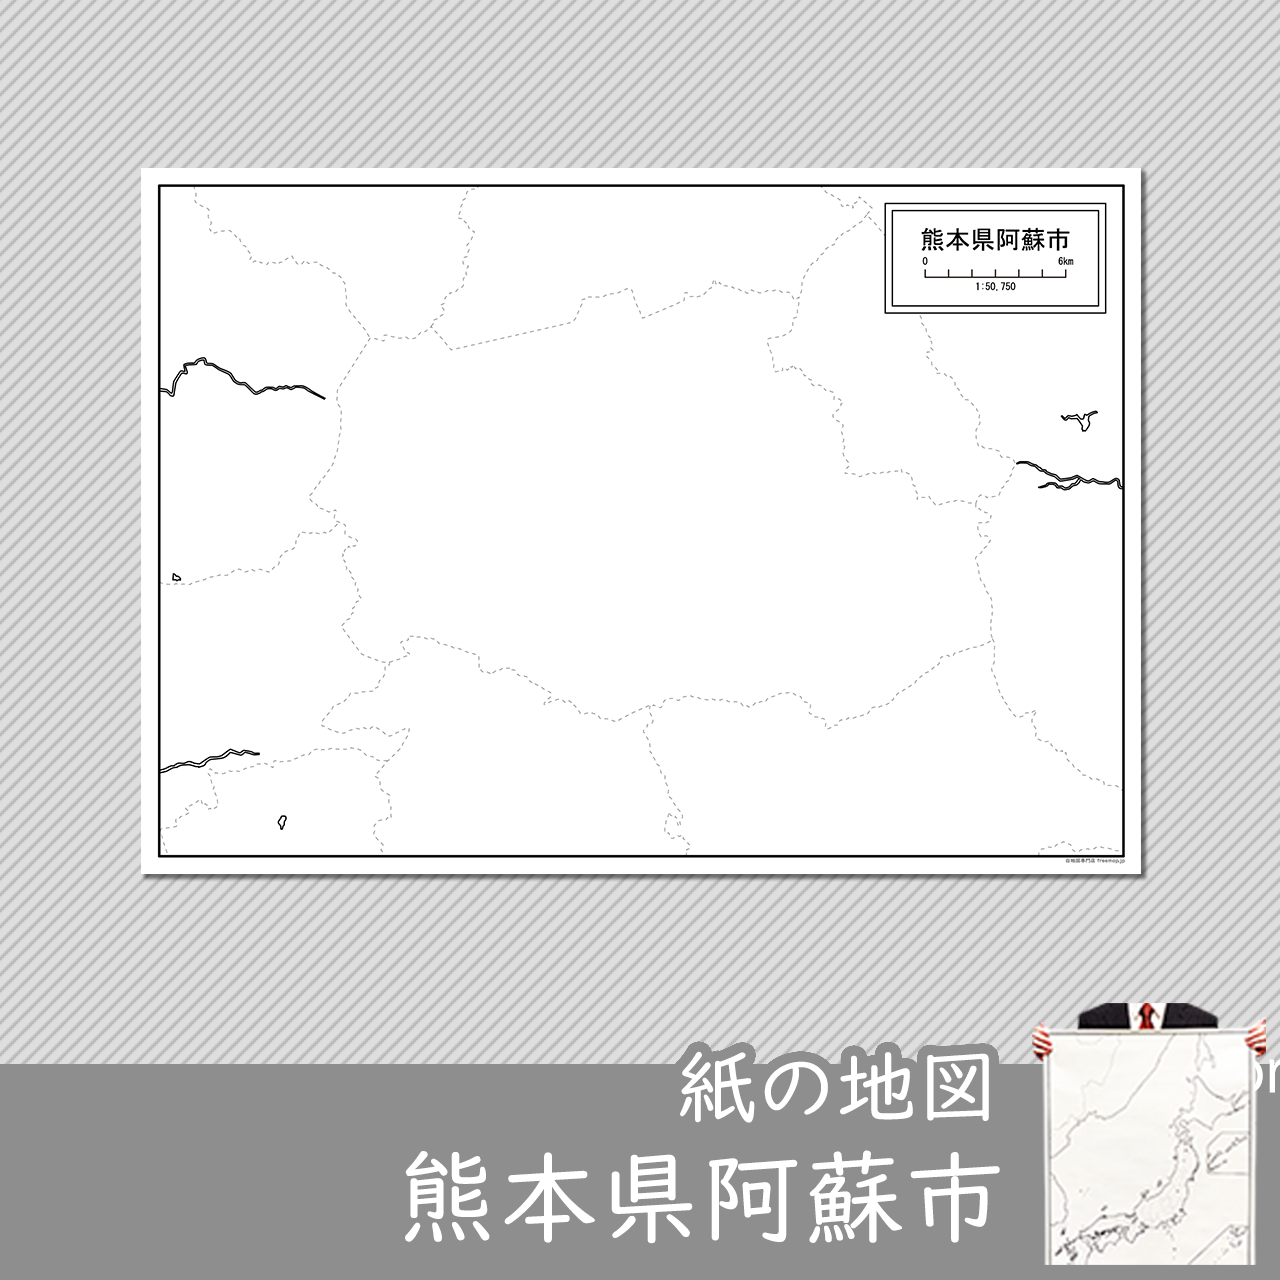 阿蘇市の紙の白地図のサムネイル